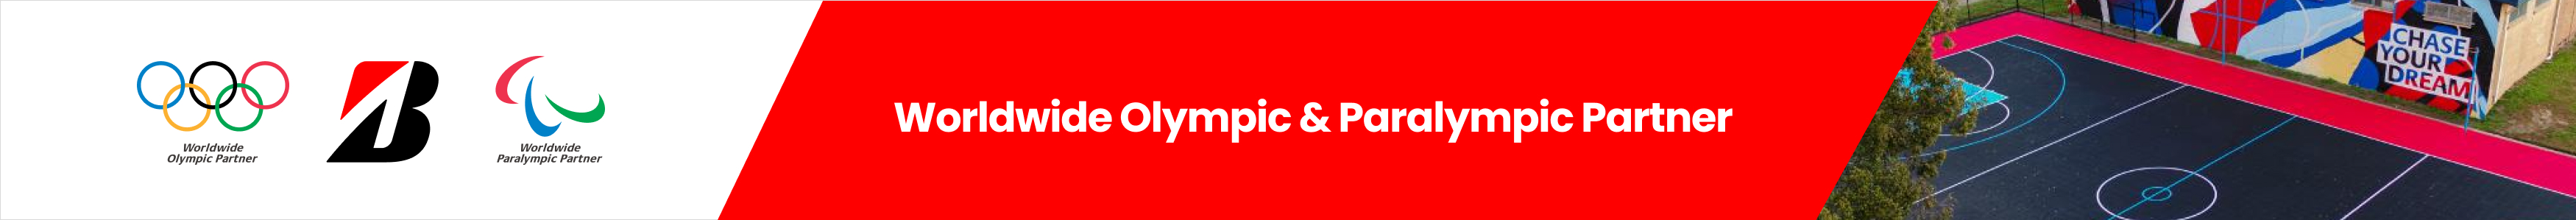 World Olympics & Paralympic Partner